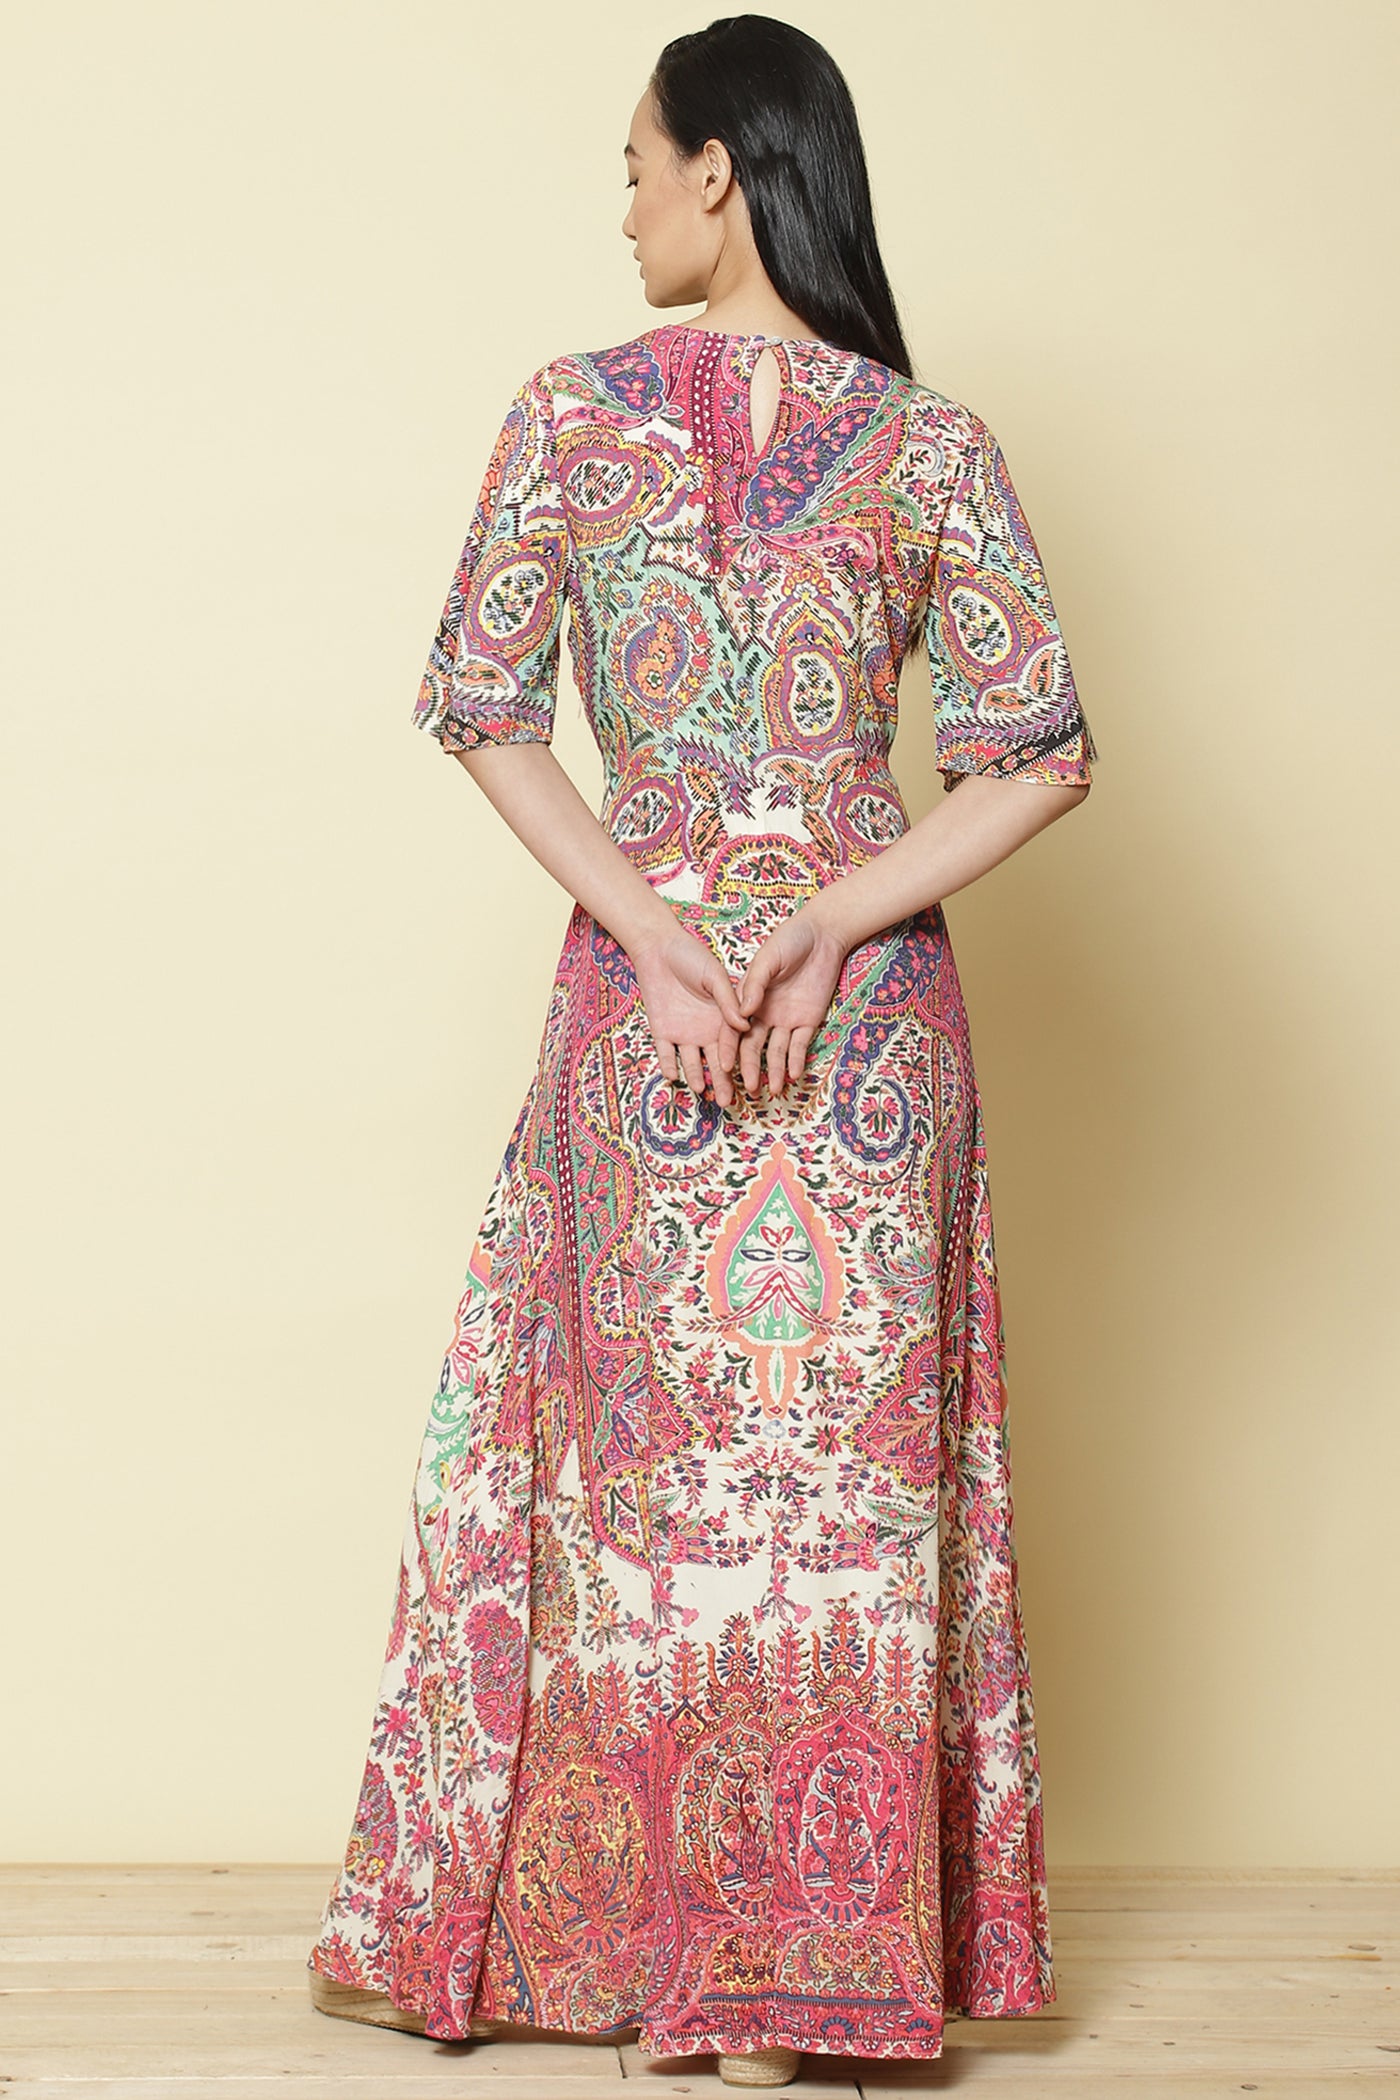 label ritu kumar Half Sleeves Printed Long Dress pink online shopping melange singapore indian designer wear